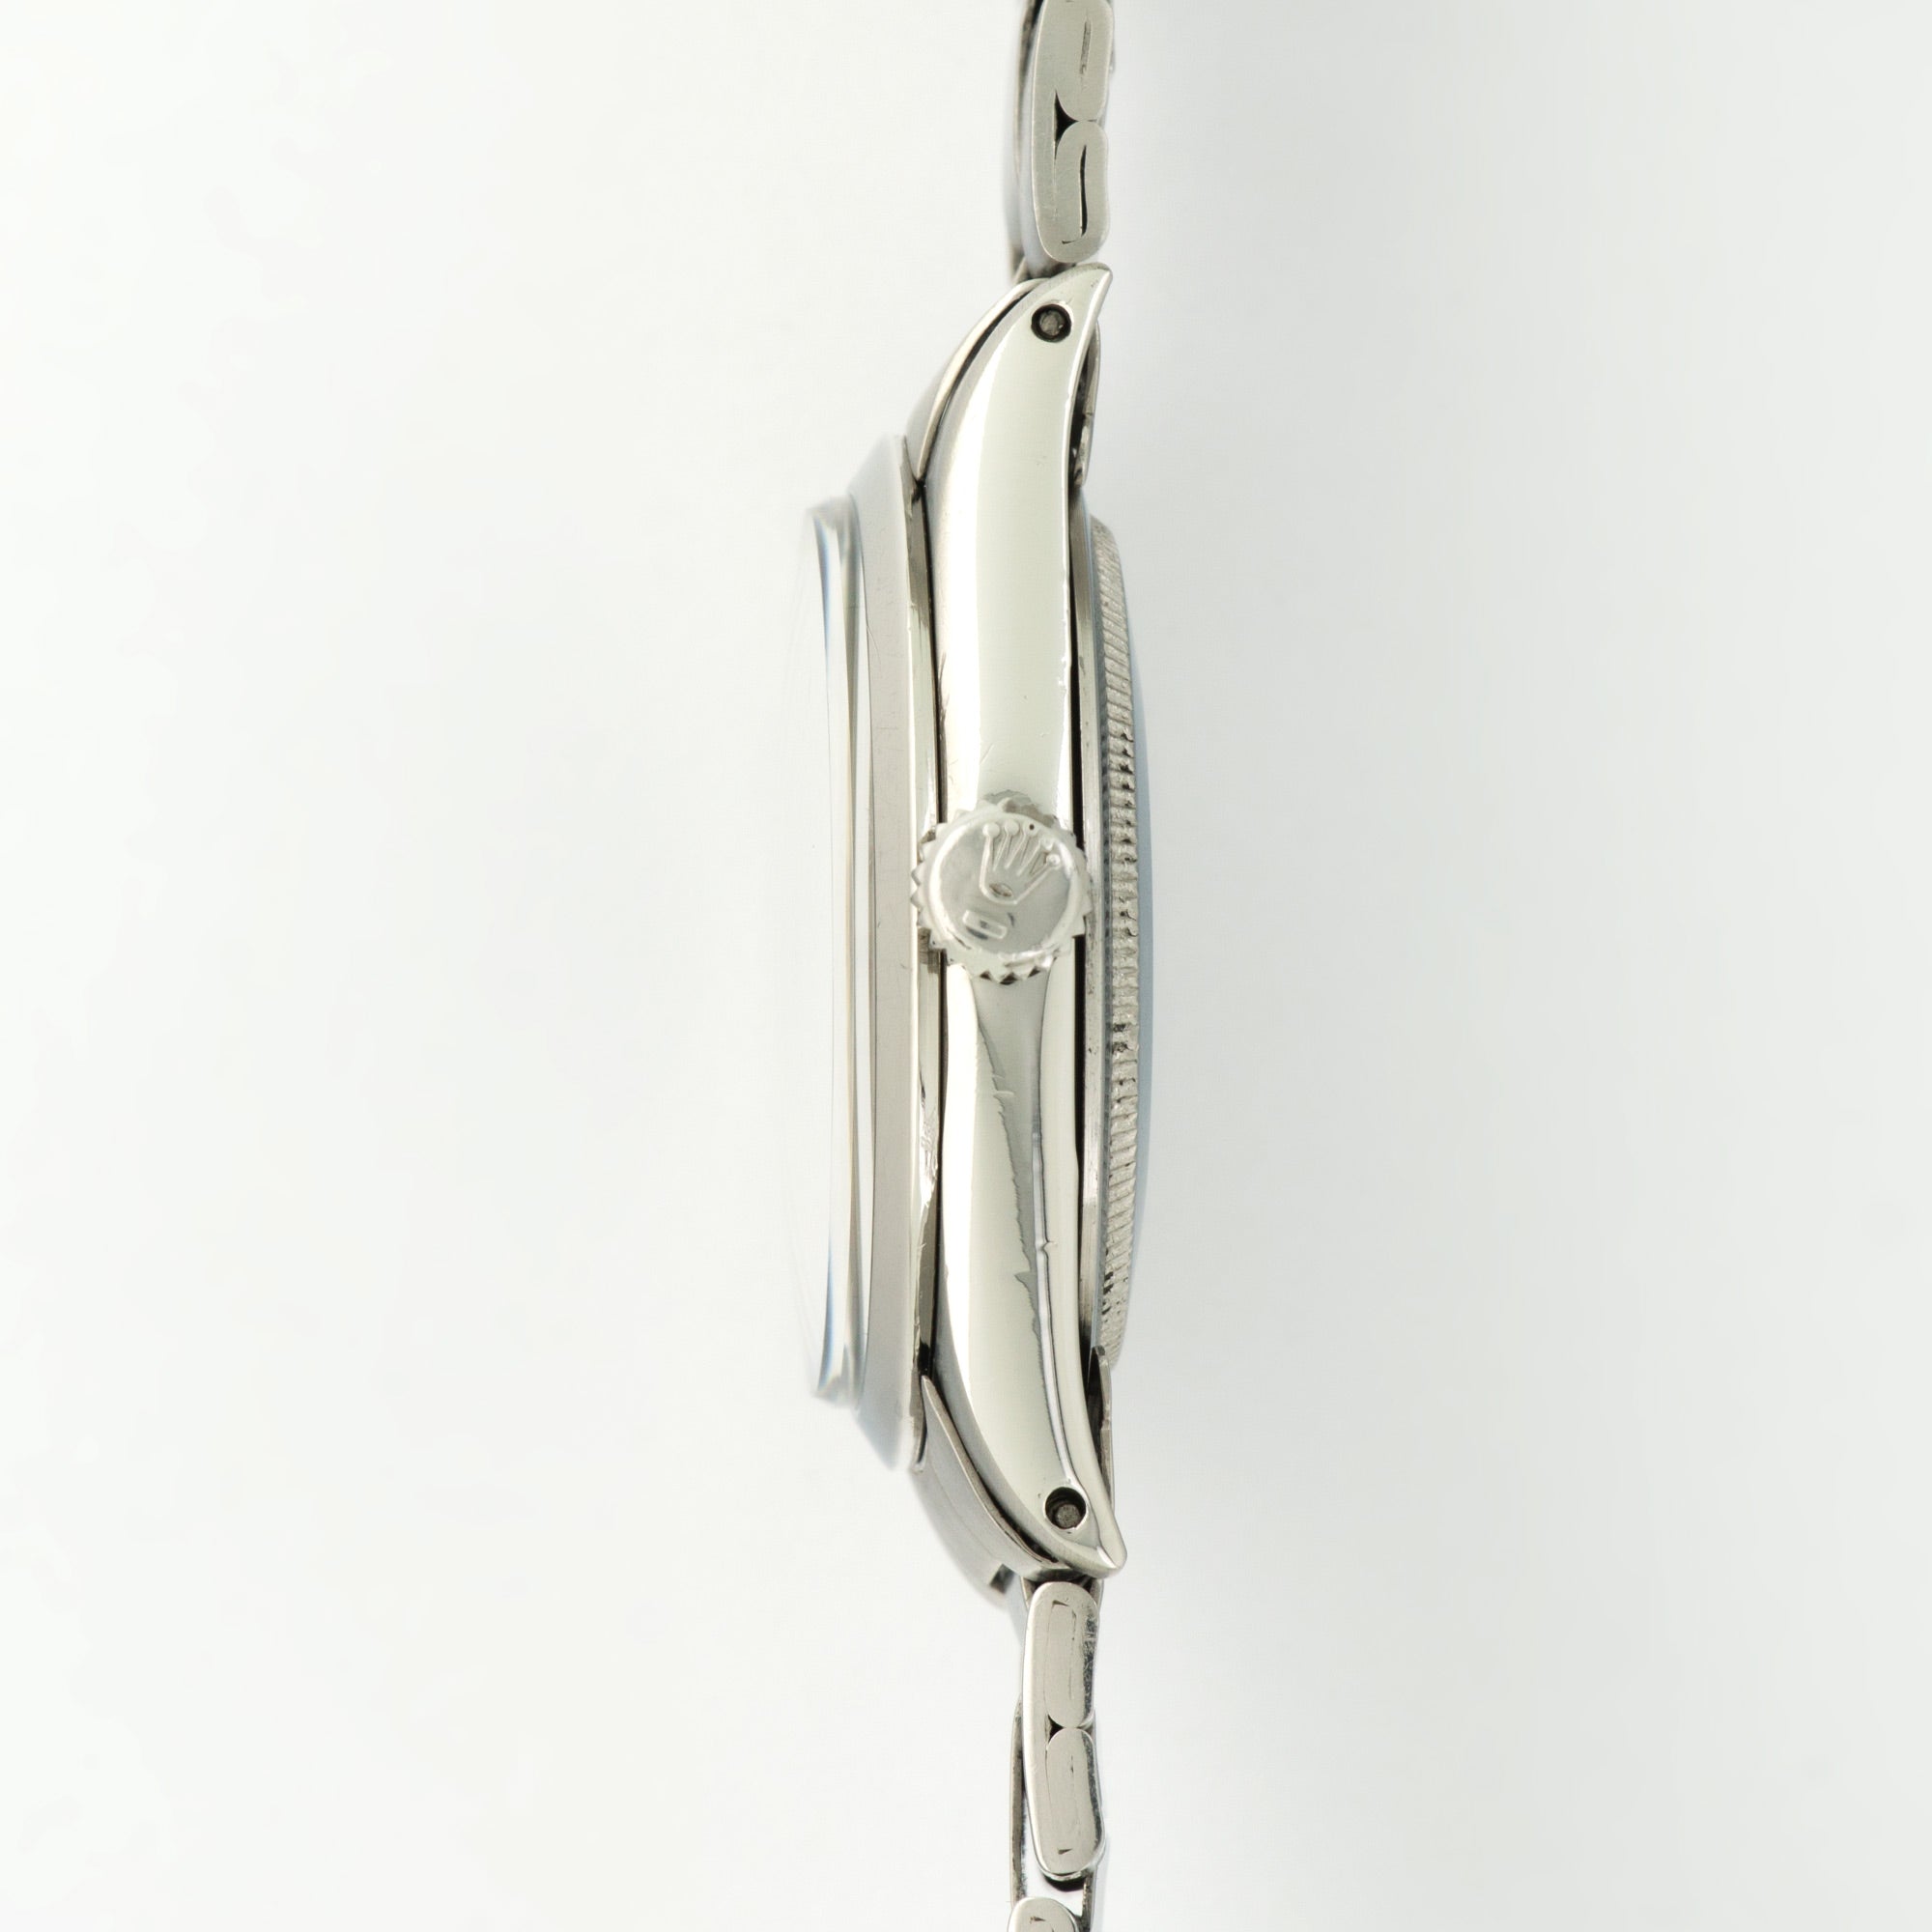 Rolex - Rolex Steel Explorer Gilt Dial Watch Ref. 1016 - The Keystone Watches